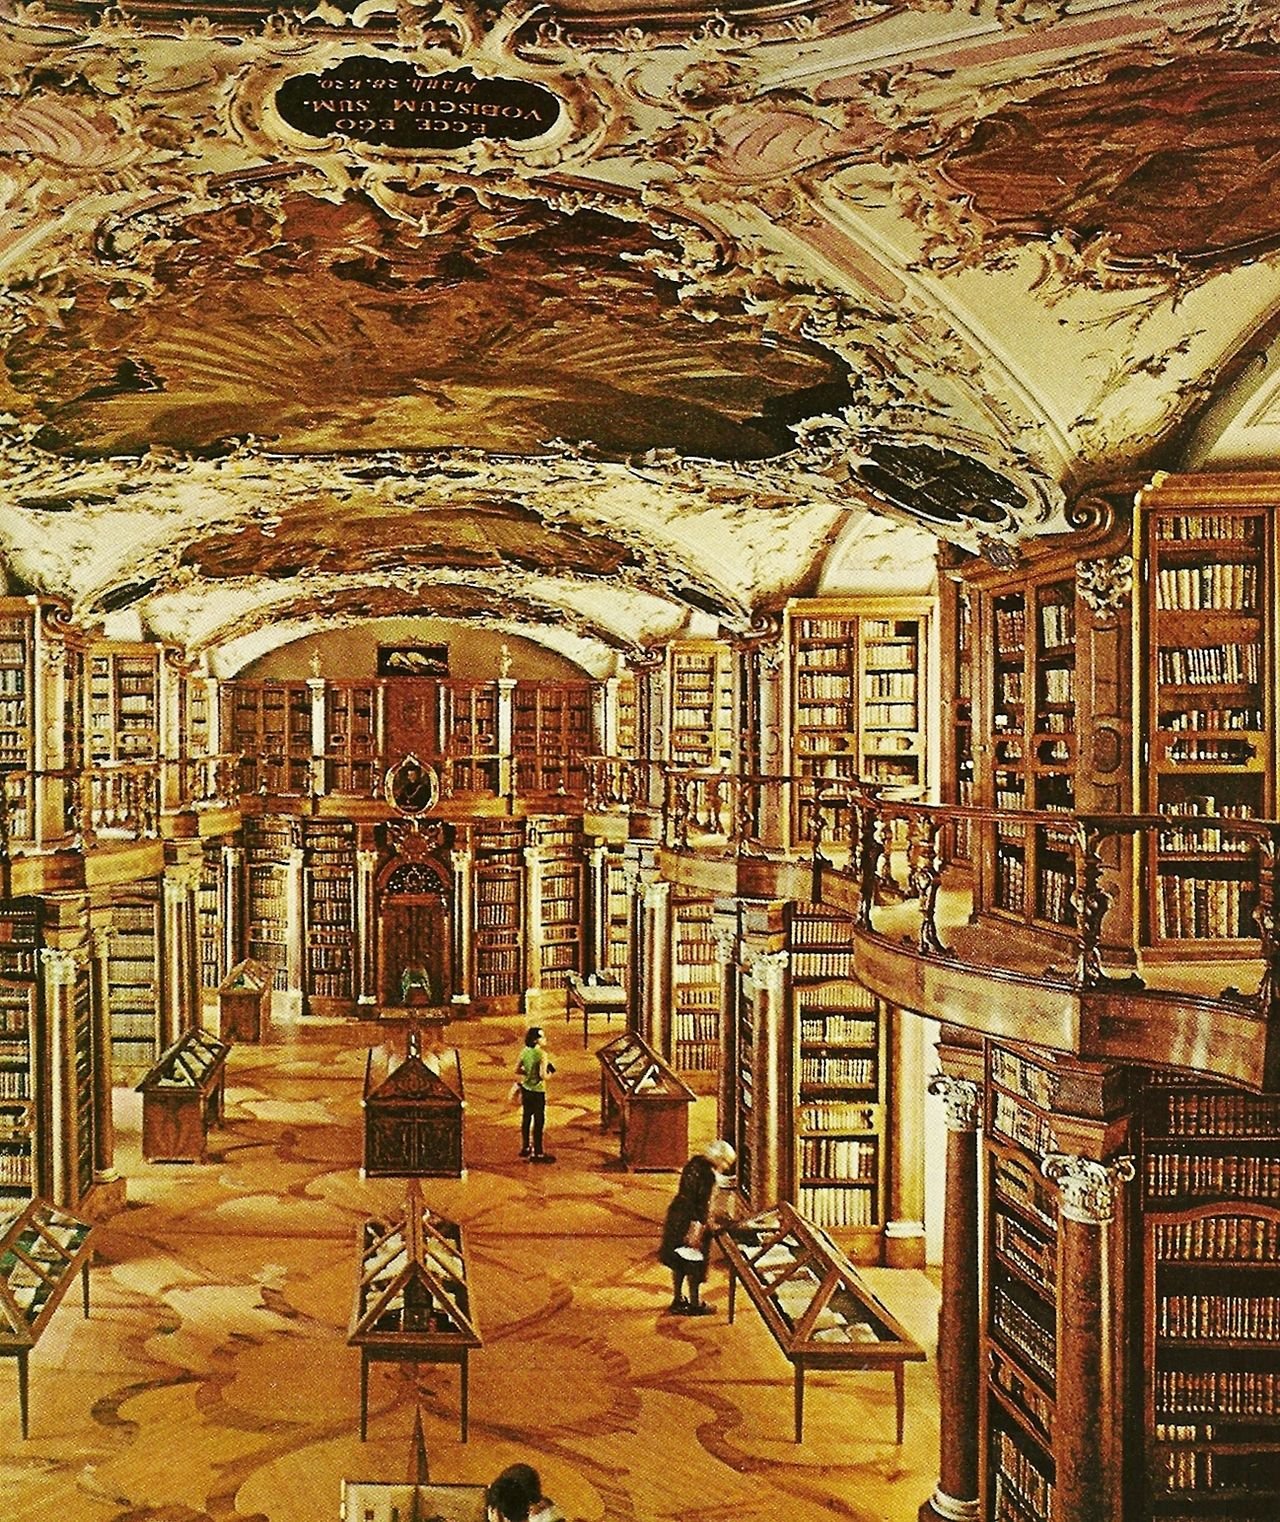 Библиотека без людей. Библиотека средневековья. Старая библиотека. Старинная библиотека в замке. Интерьер старинной библиотеки.